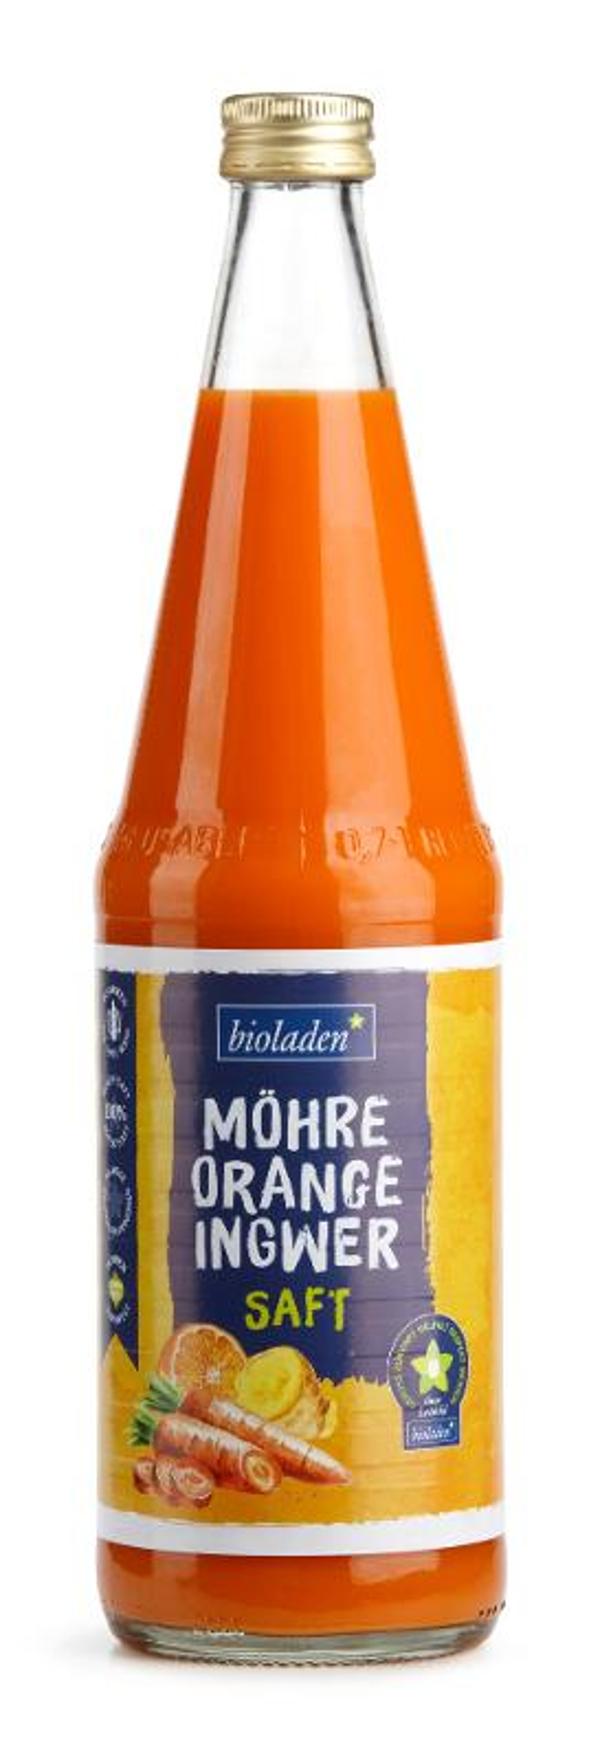 Produktfoto zu Möhre-Orange-Ingwer Saft bioladen